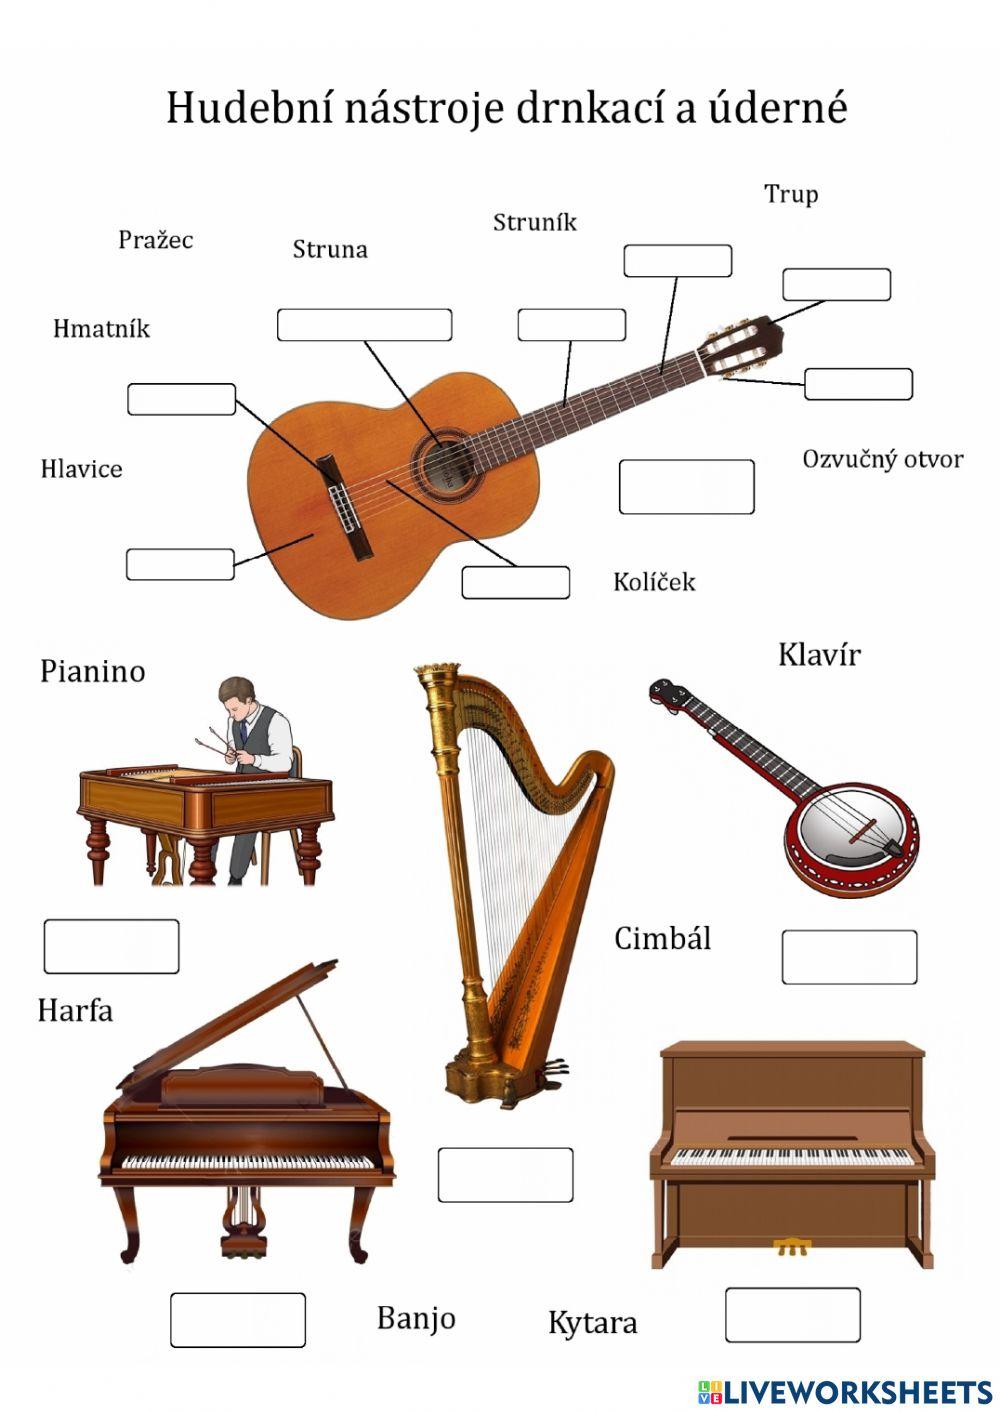 Hudební nástroje drnkací a úderné interactive worksheet | Live Worksheets